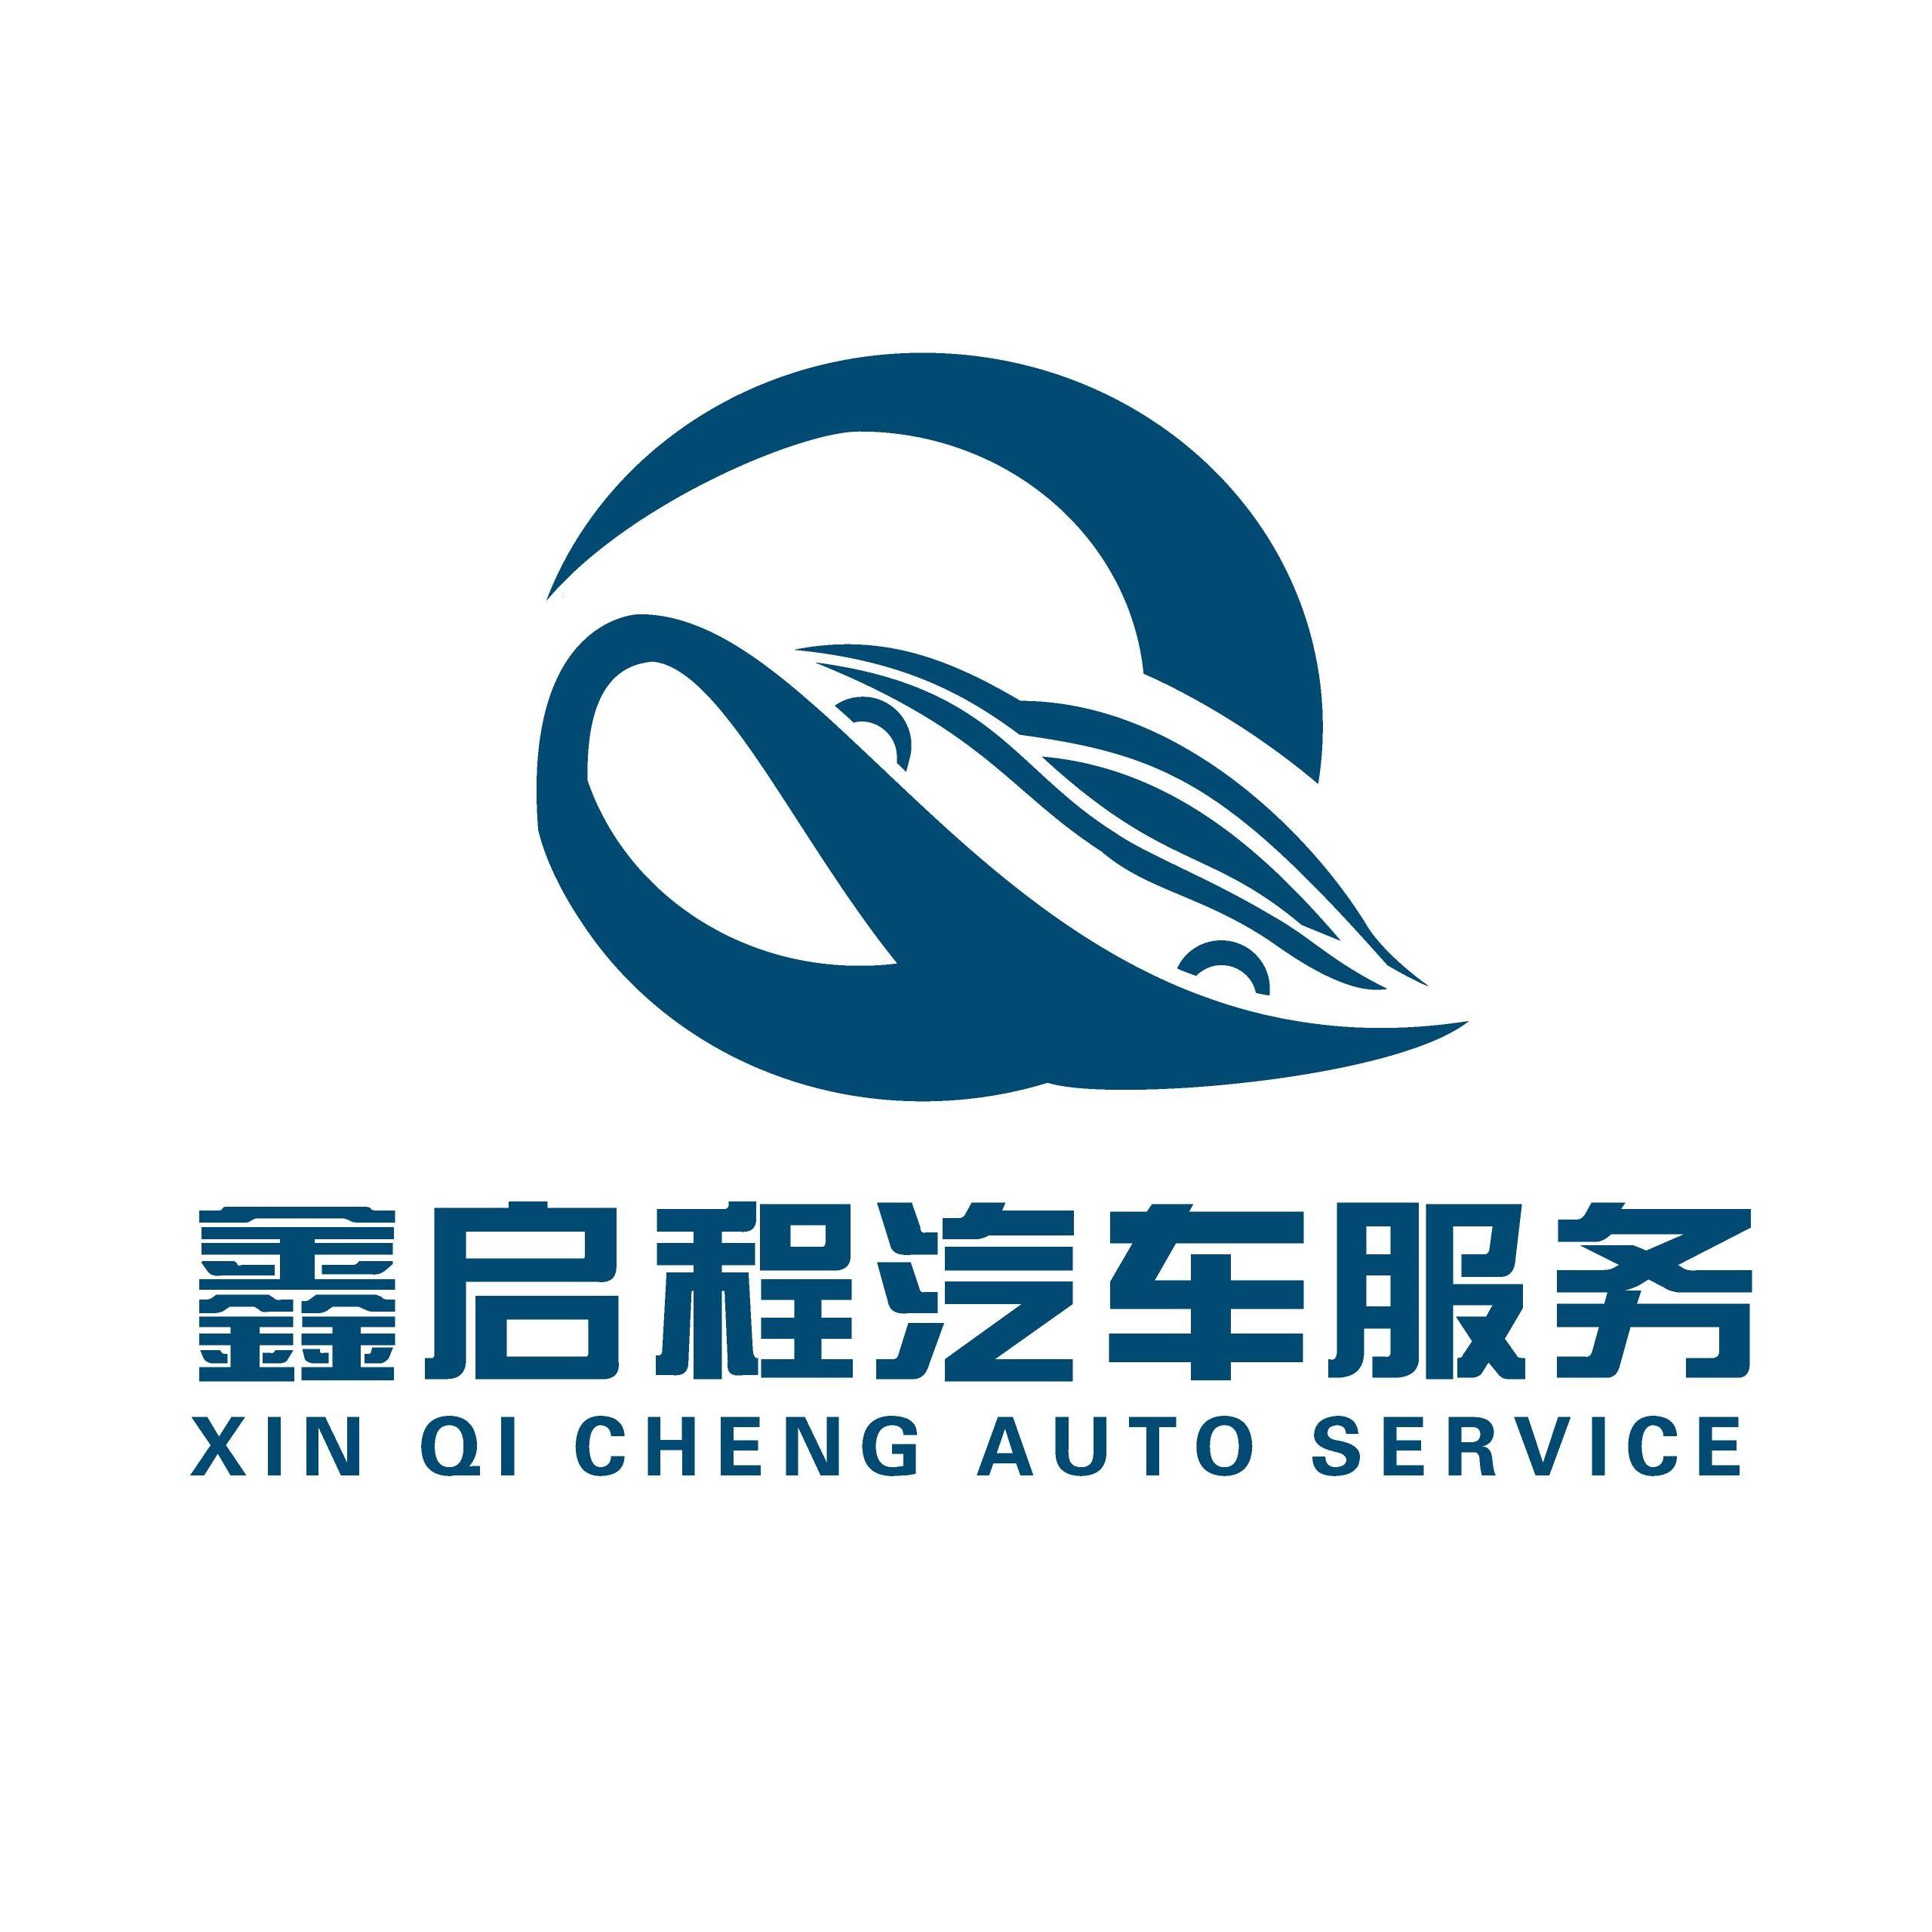 商家简介 鑫启程汽车服务有限公司 是面向全北京市场的汽车服务类公司